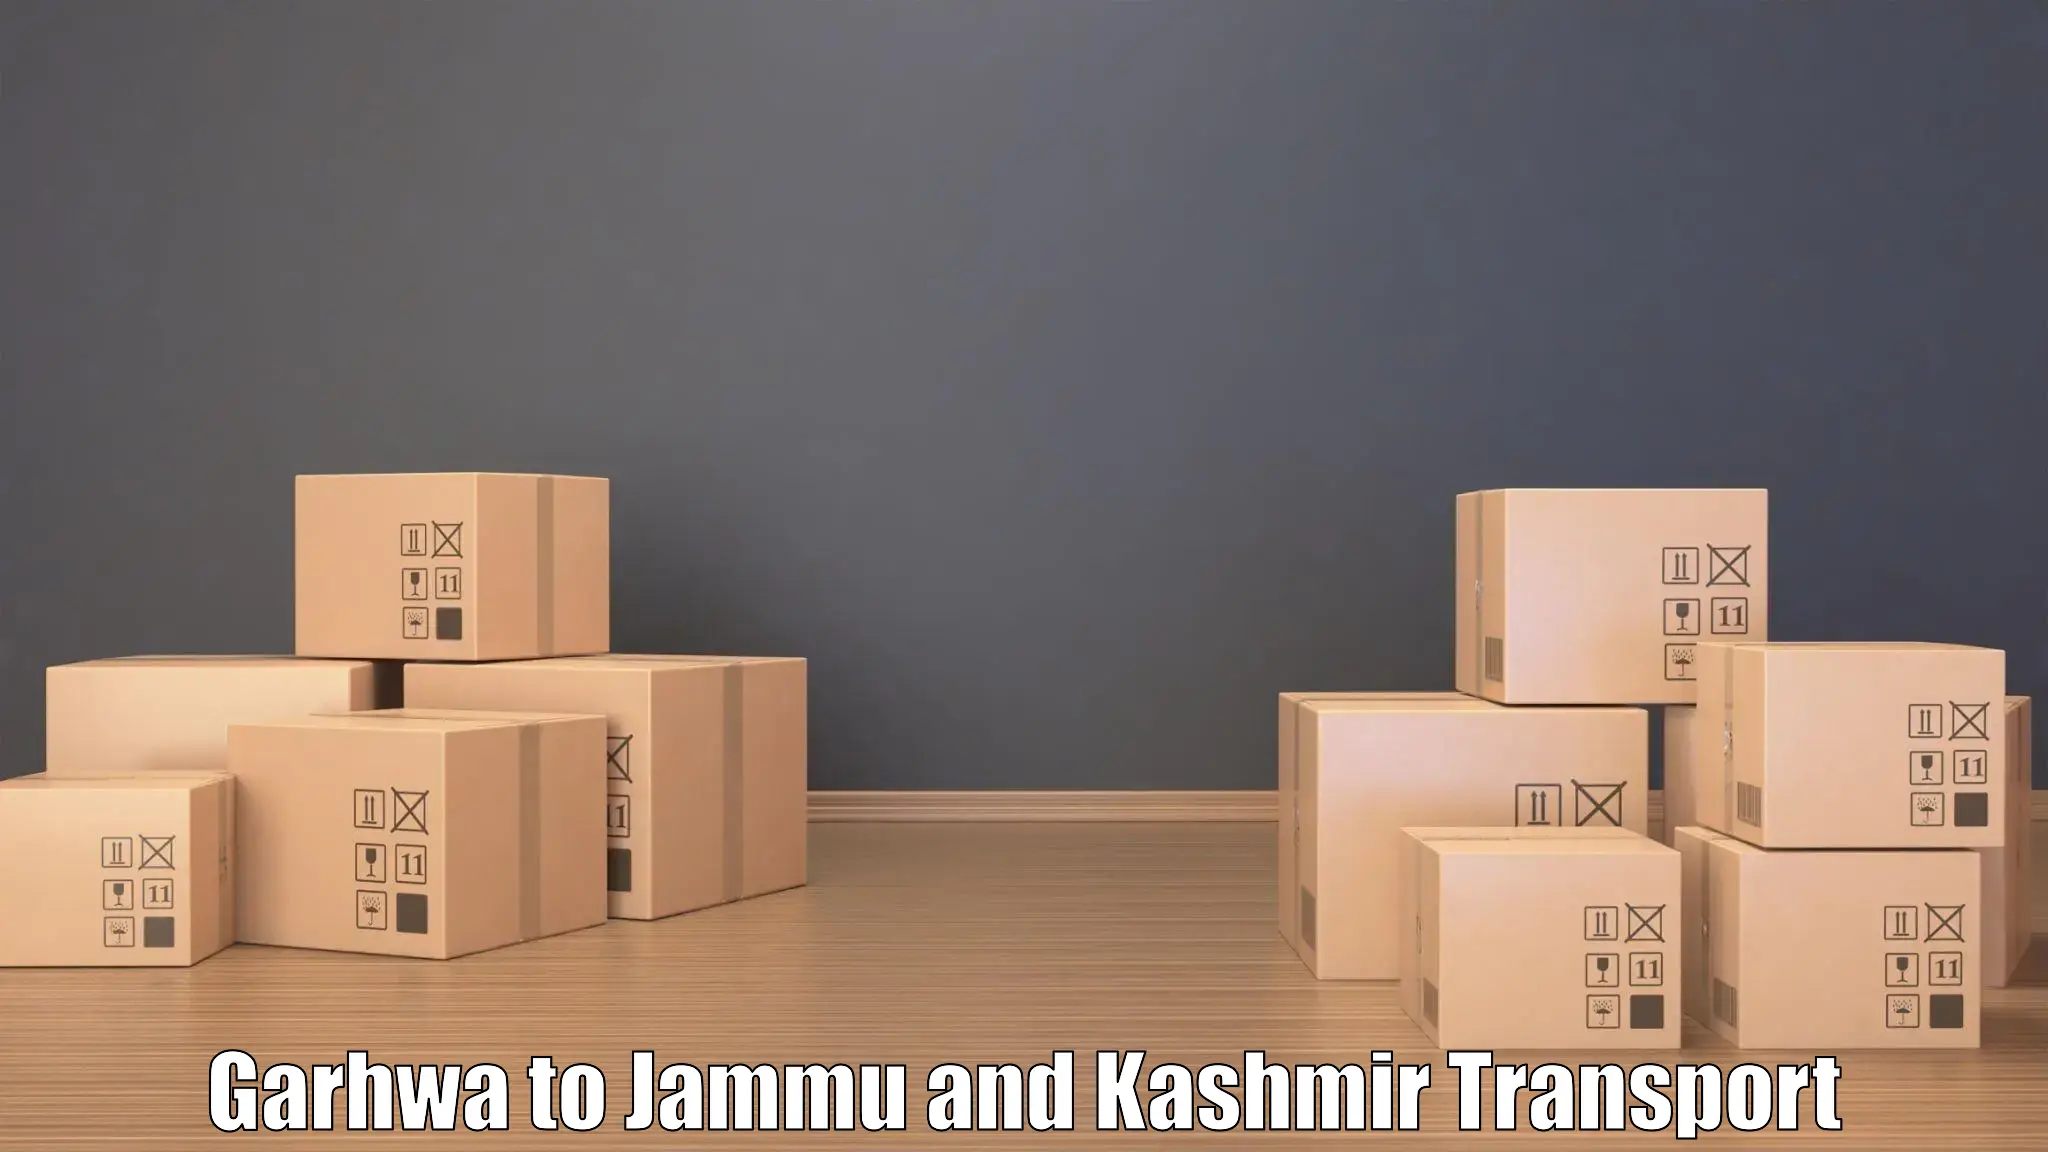 Transport services Garhwa to Srinagar Kashmir